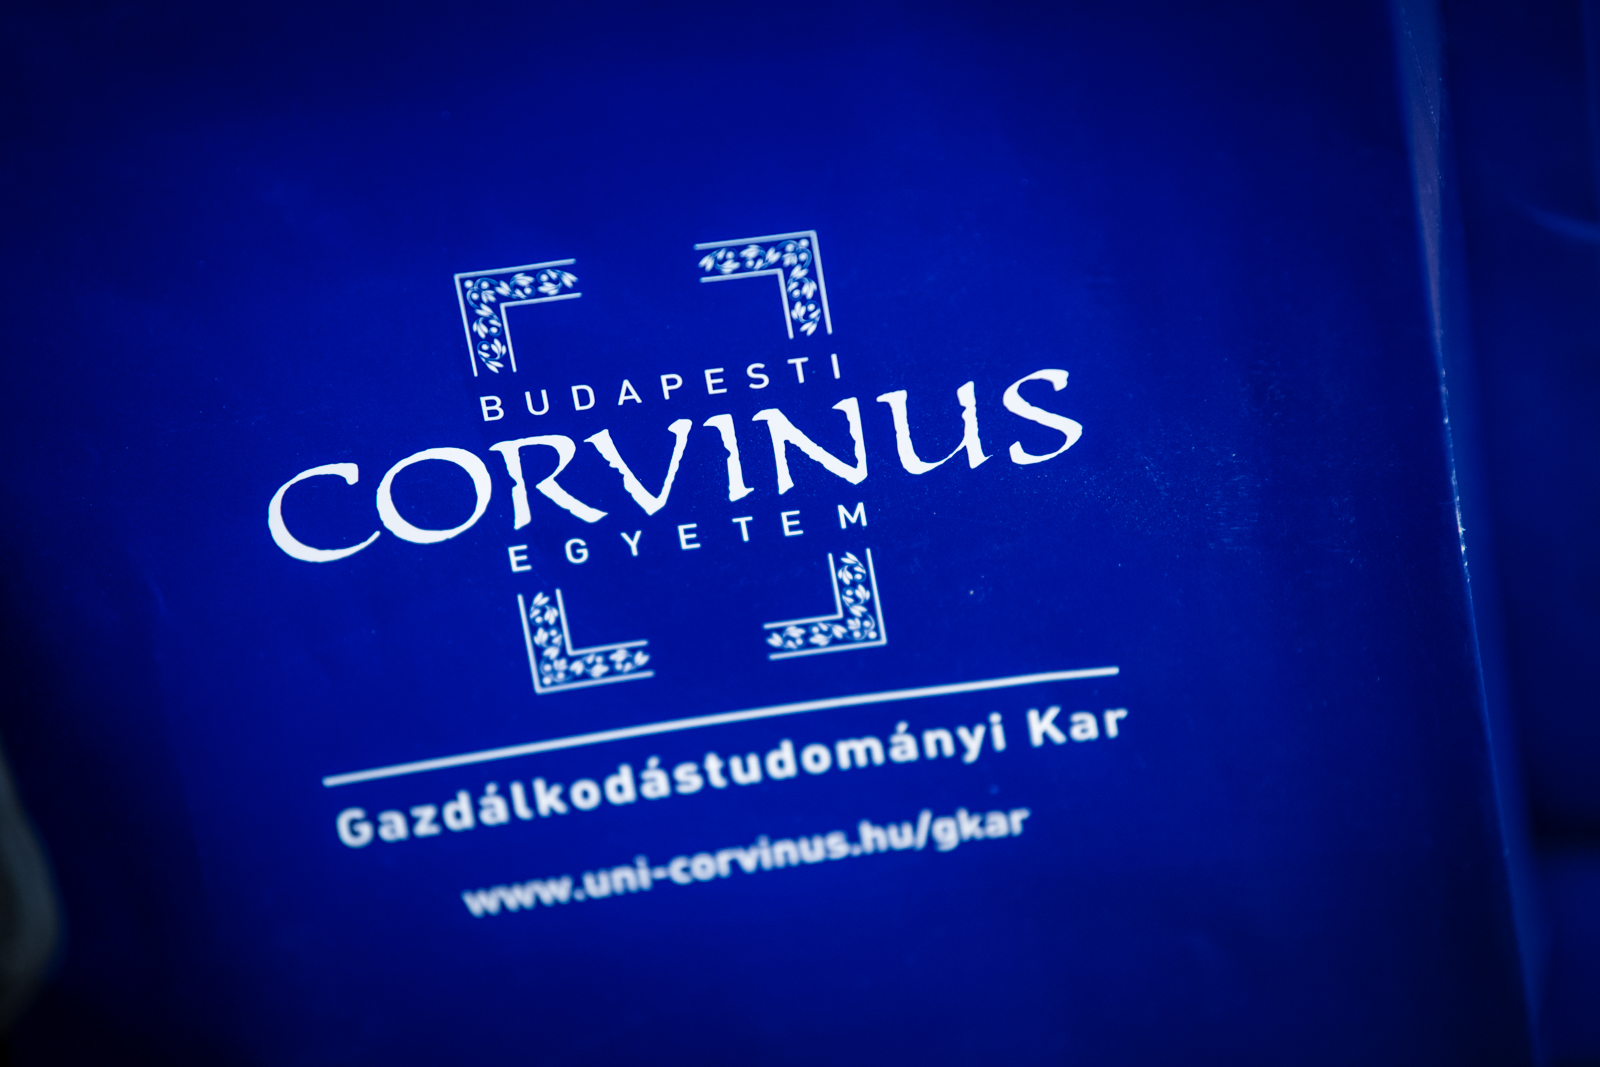 Turizmus és vendéglátás alapszak is indul a Corvinus Székesfehérvári Campusán